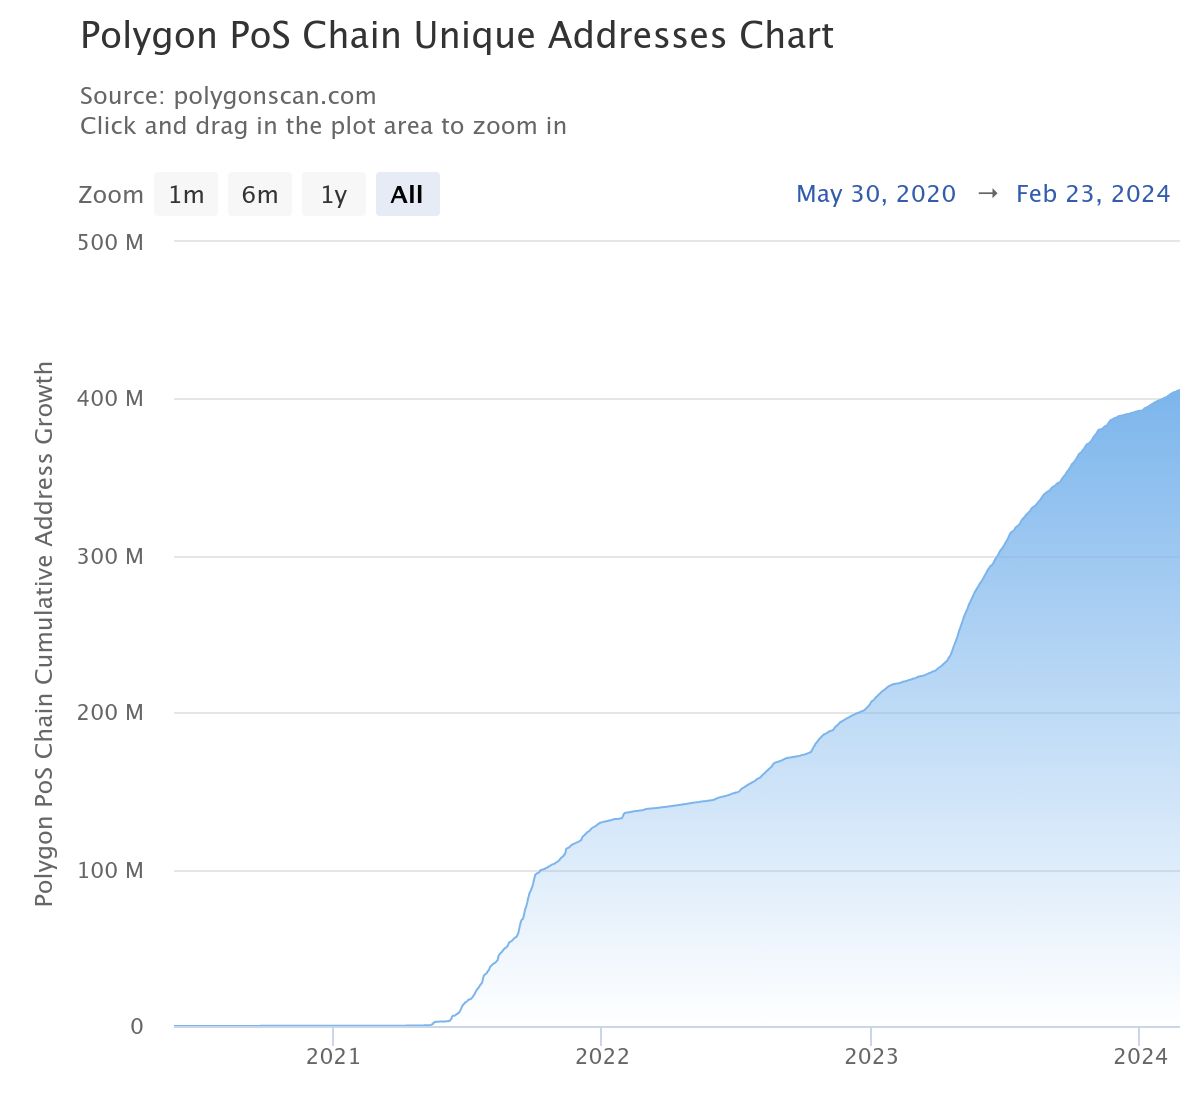 Polygon franchit une nouvelle étape avec des enregistrements dans les adresses actives